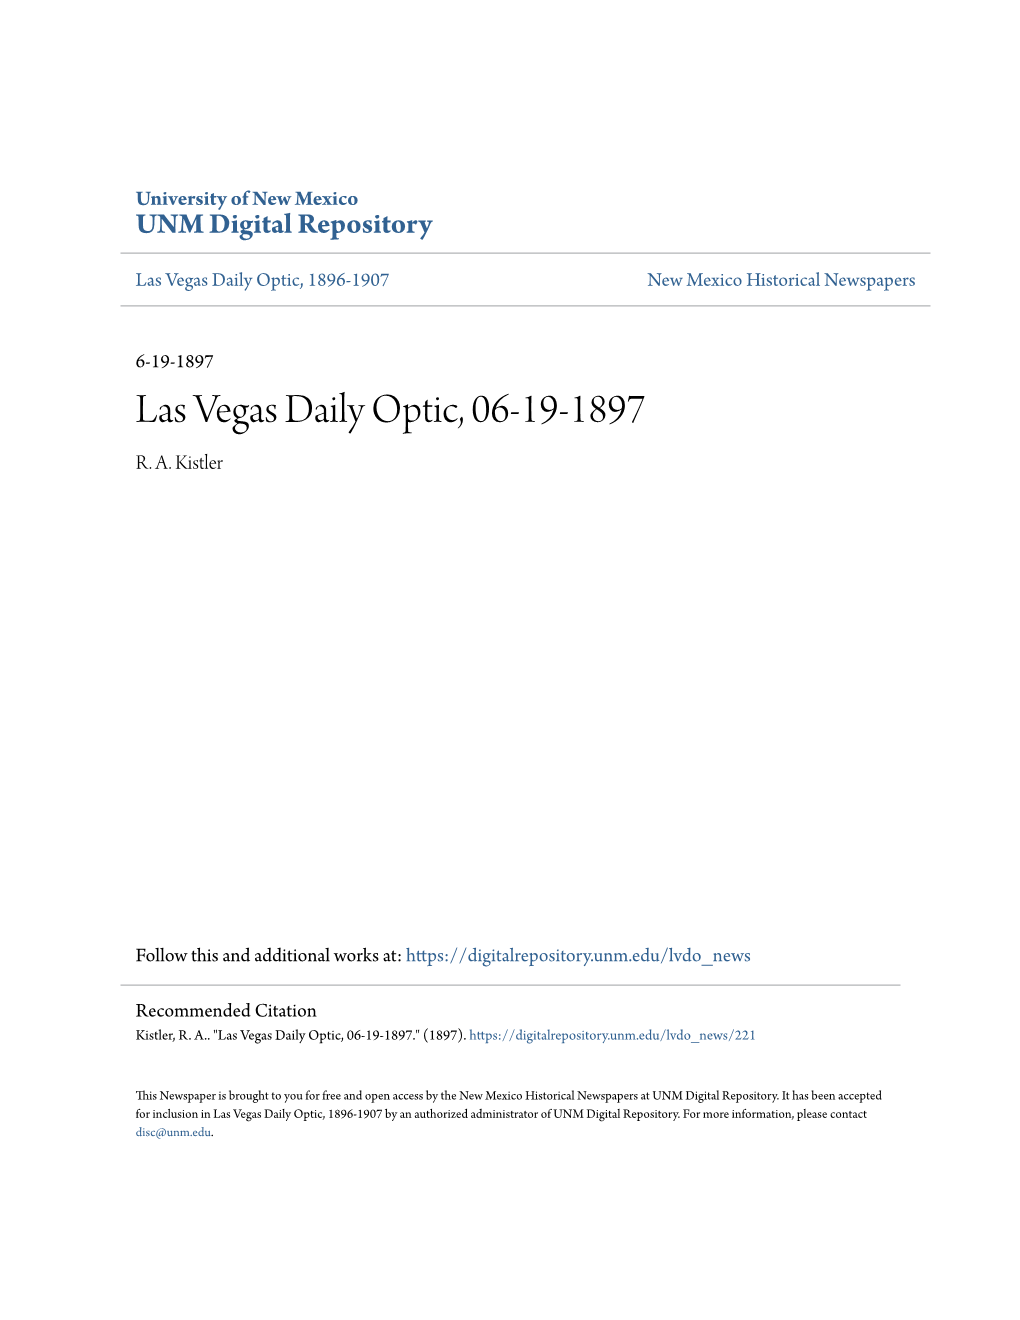 Las Vegas Daily Optic, 06-19-1897 R